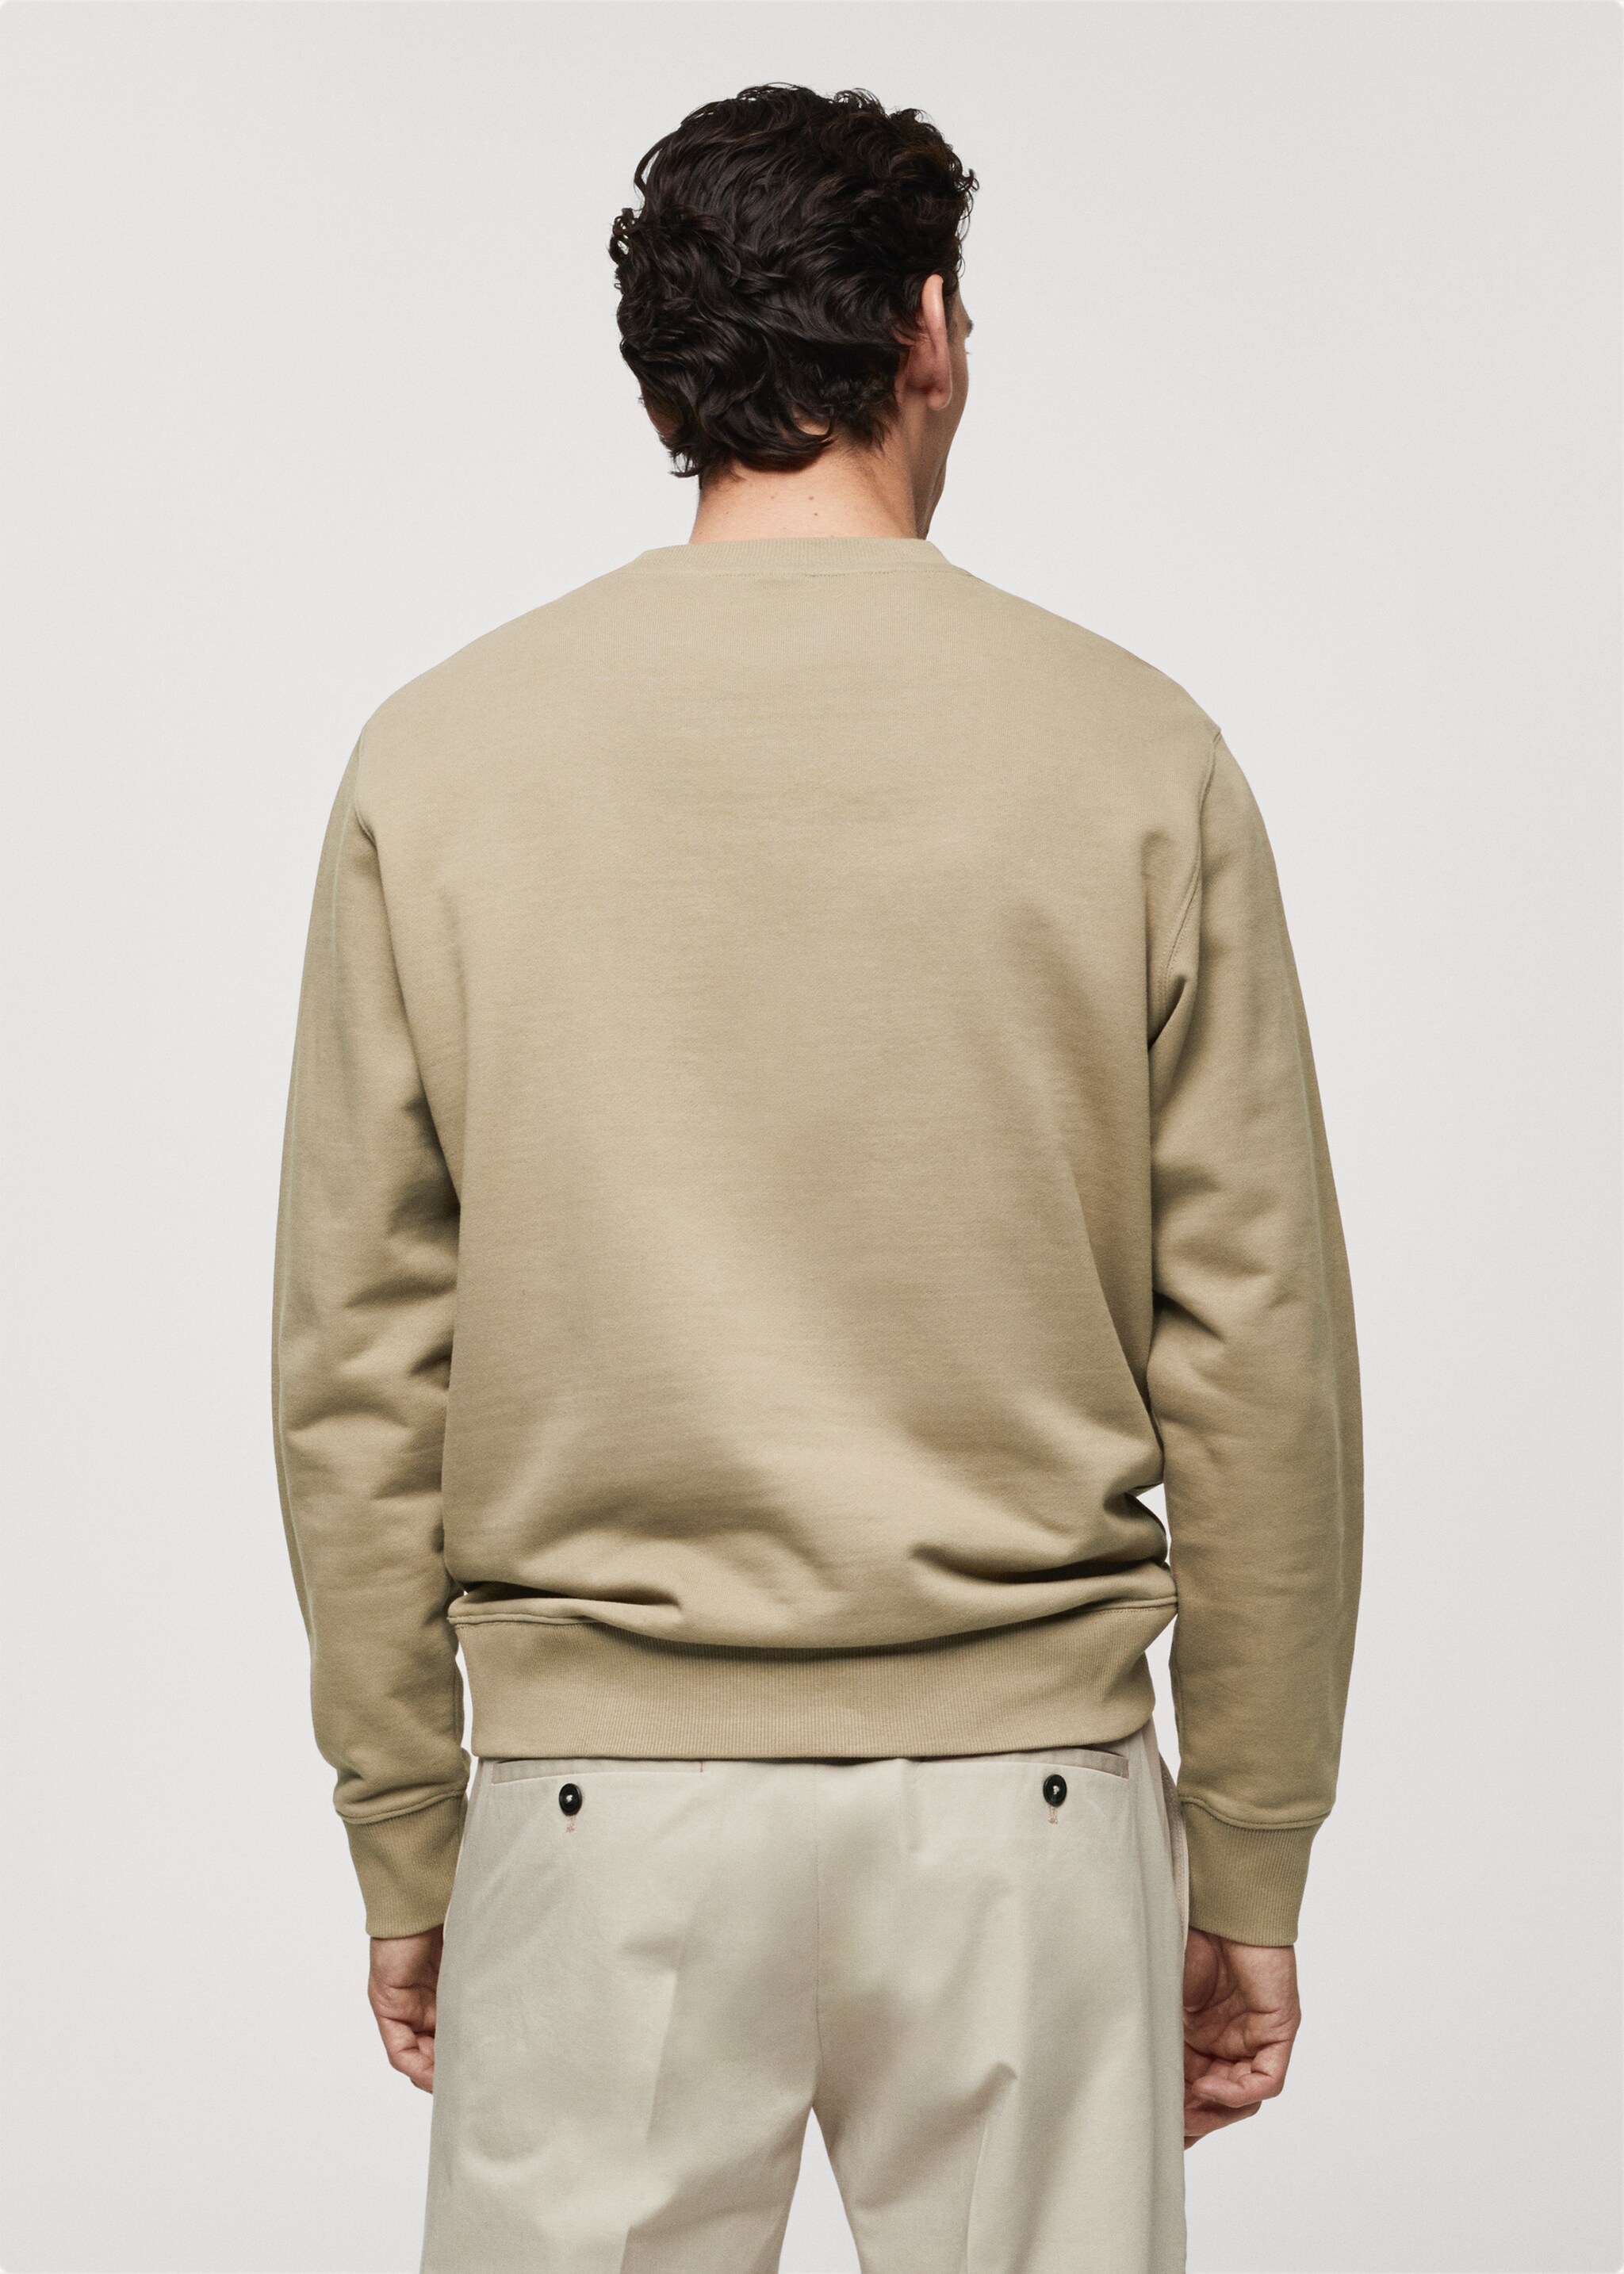 Sweatshirt básica de 100% algodão - Verso do artigo